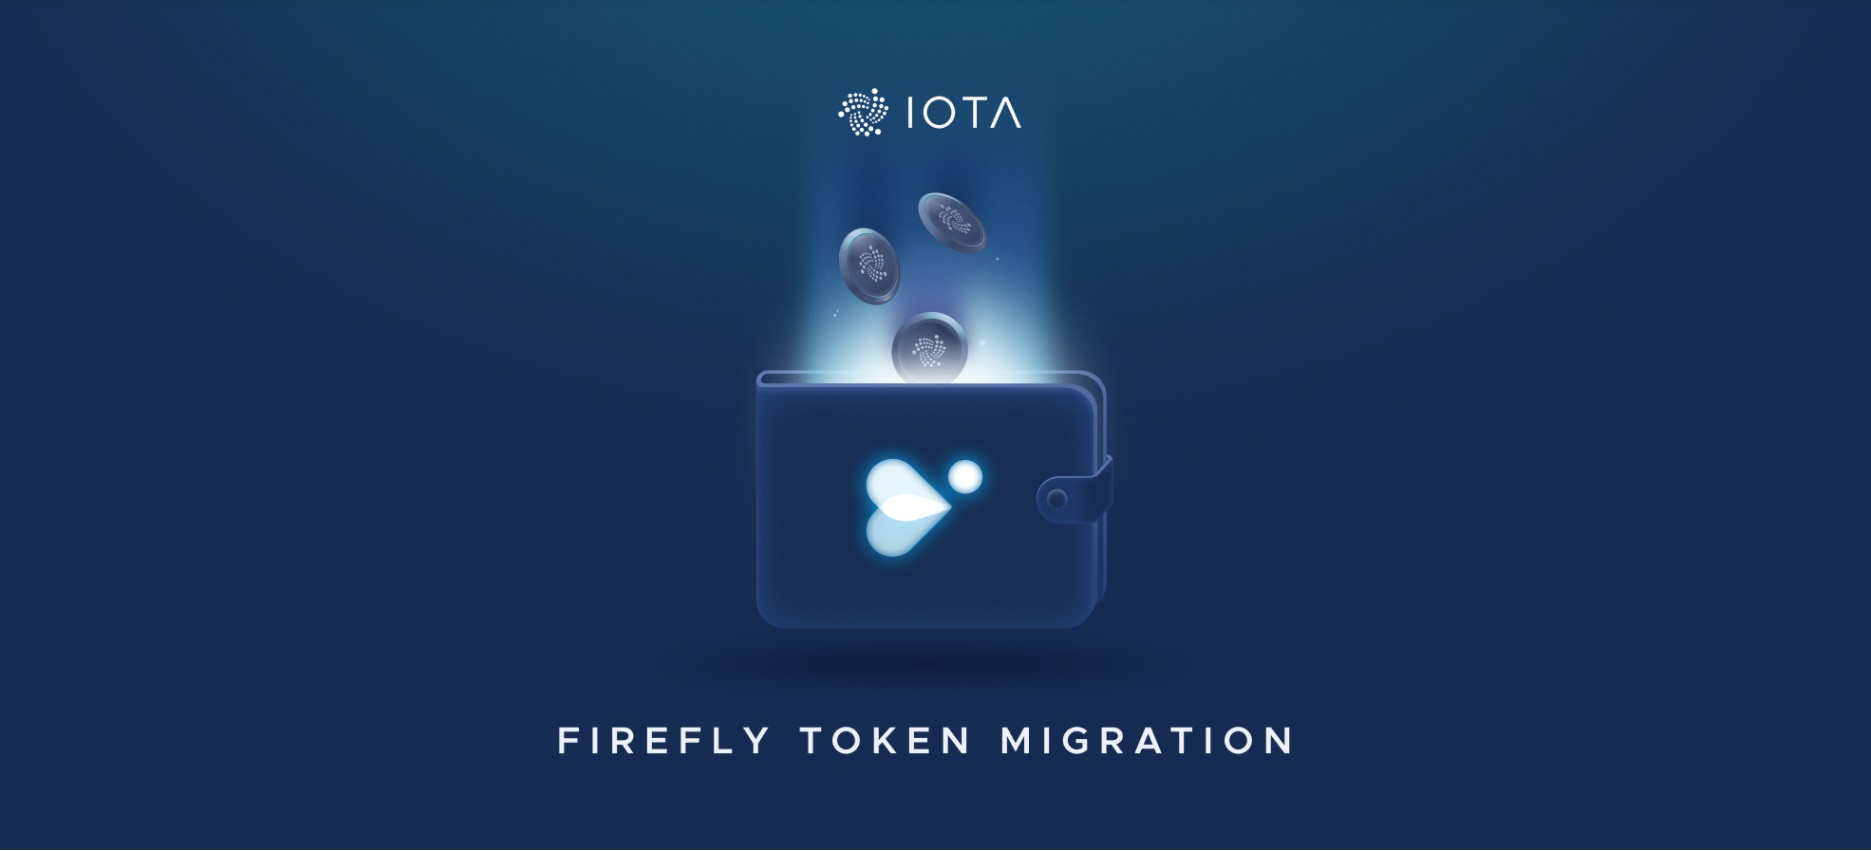 IOTA - migrácia tokenov do novej peňaženky Firefly